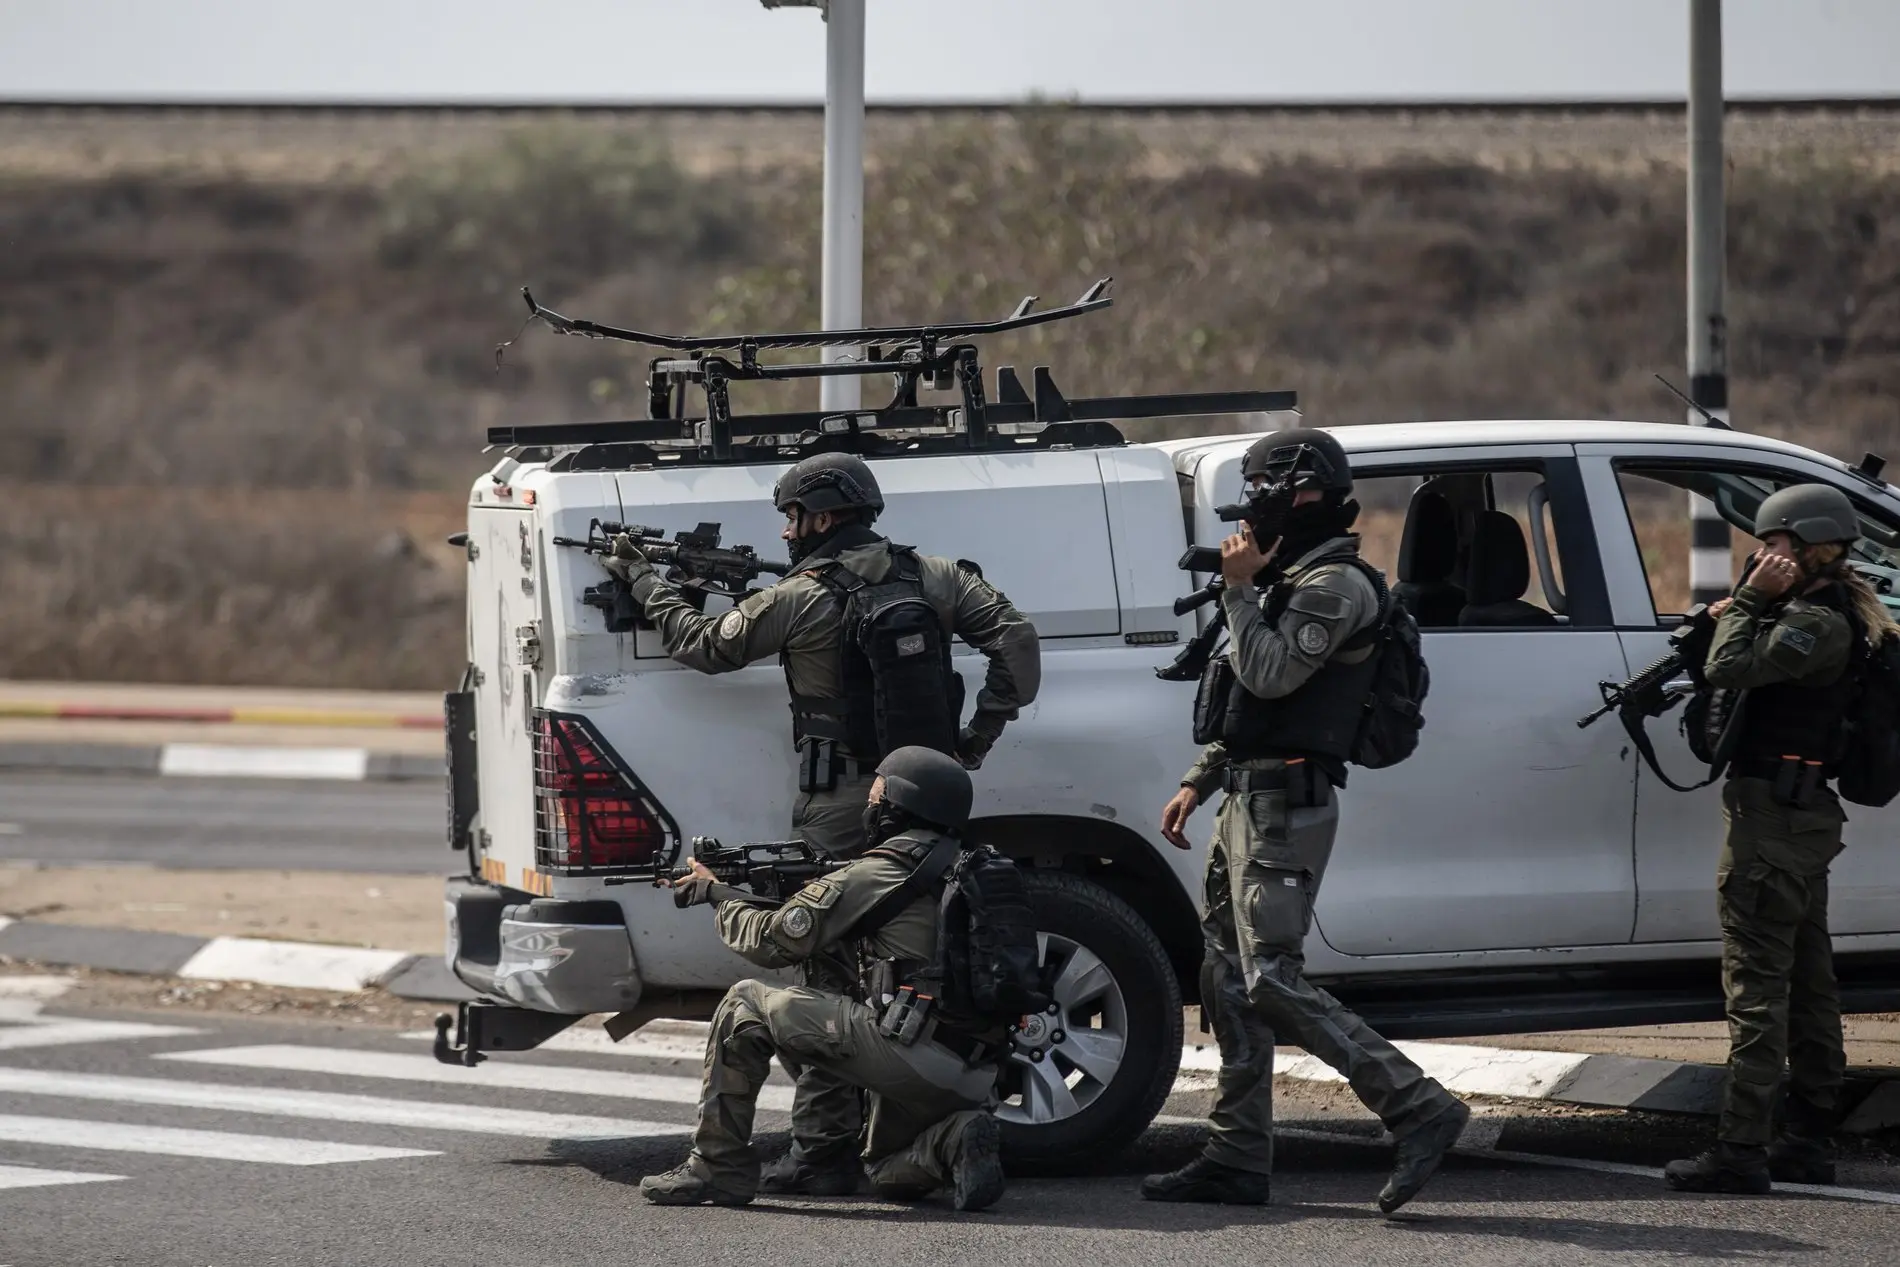 Bewaffnete israelische Soldaten suchen einen Tag nach dem Angriff der Hamas auf Israel Schutz hinter einem Fahrzeug. 